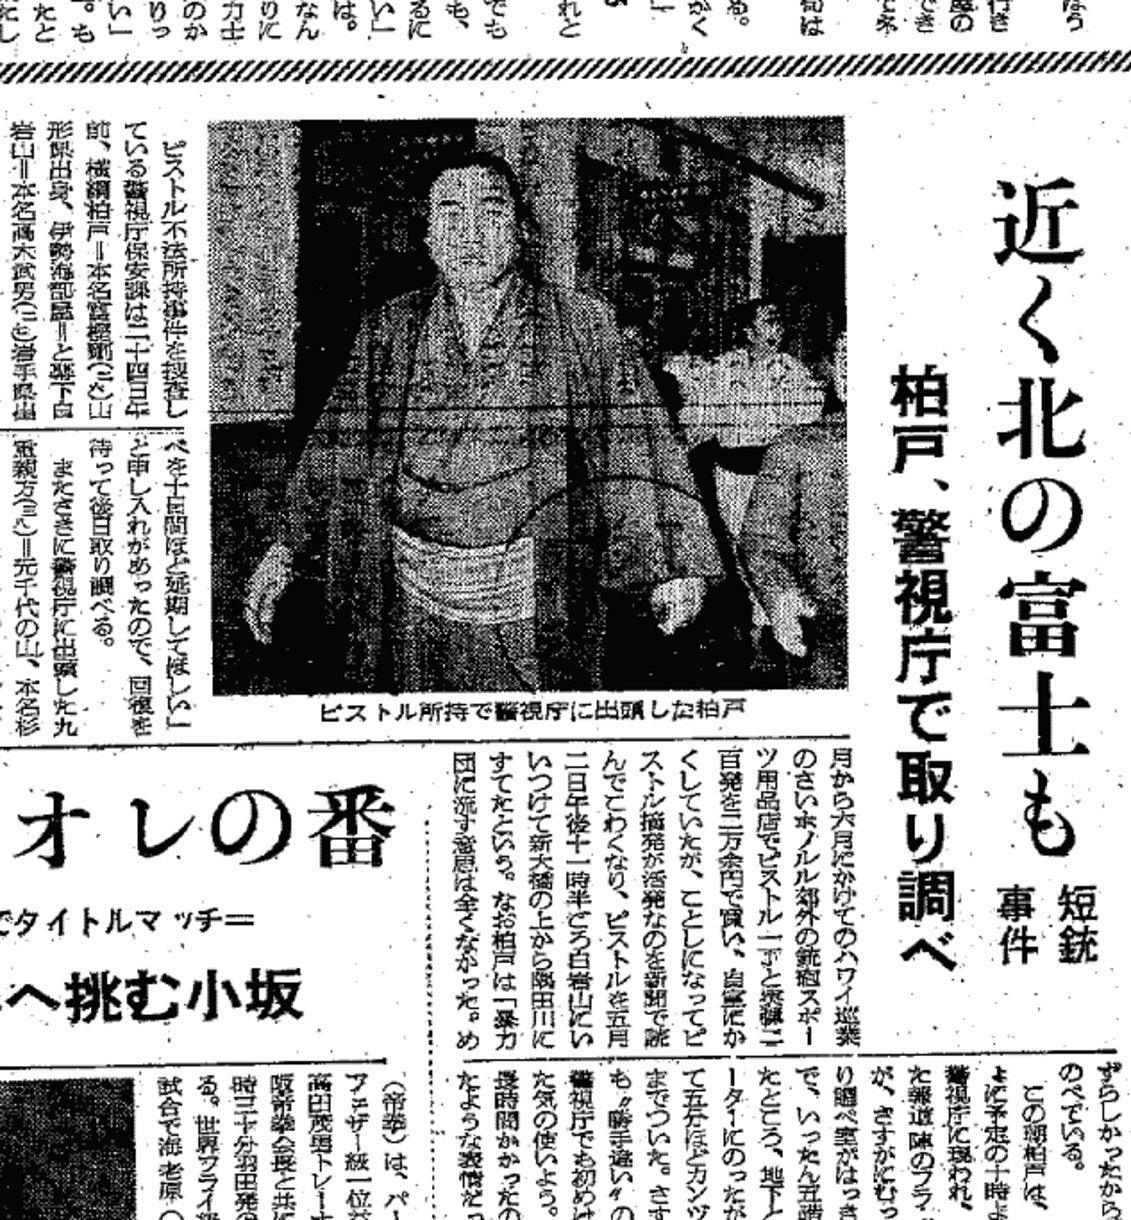 ピストル不法所持に関し、取り調べを受けた横綱柏戸について報じる1965年5月25日付の中日スポーツ。「近く北の富士も」との見出しも